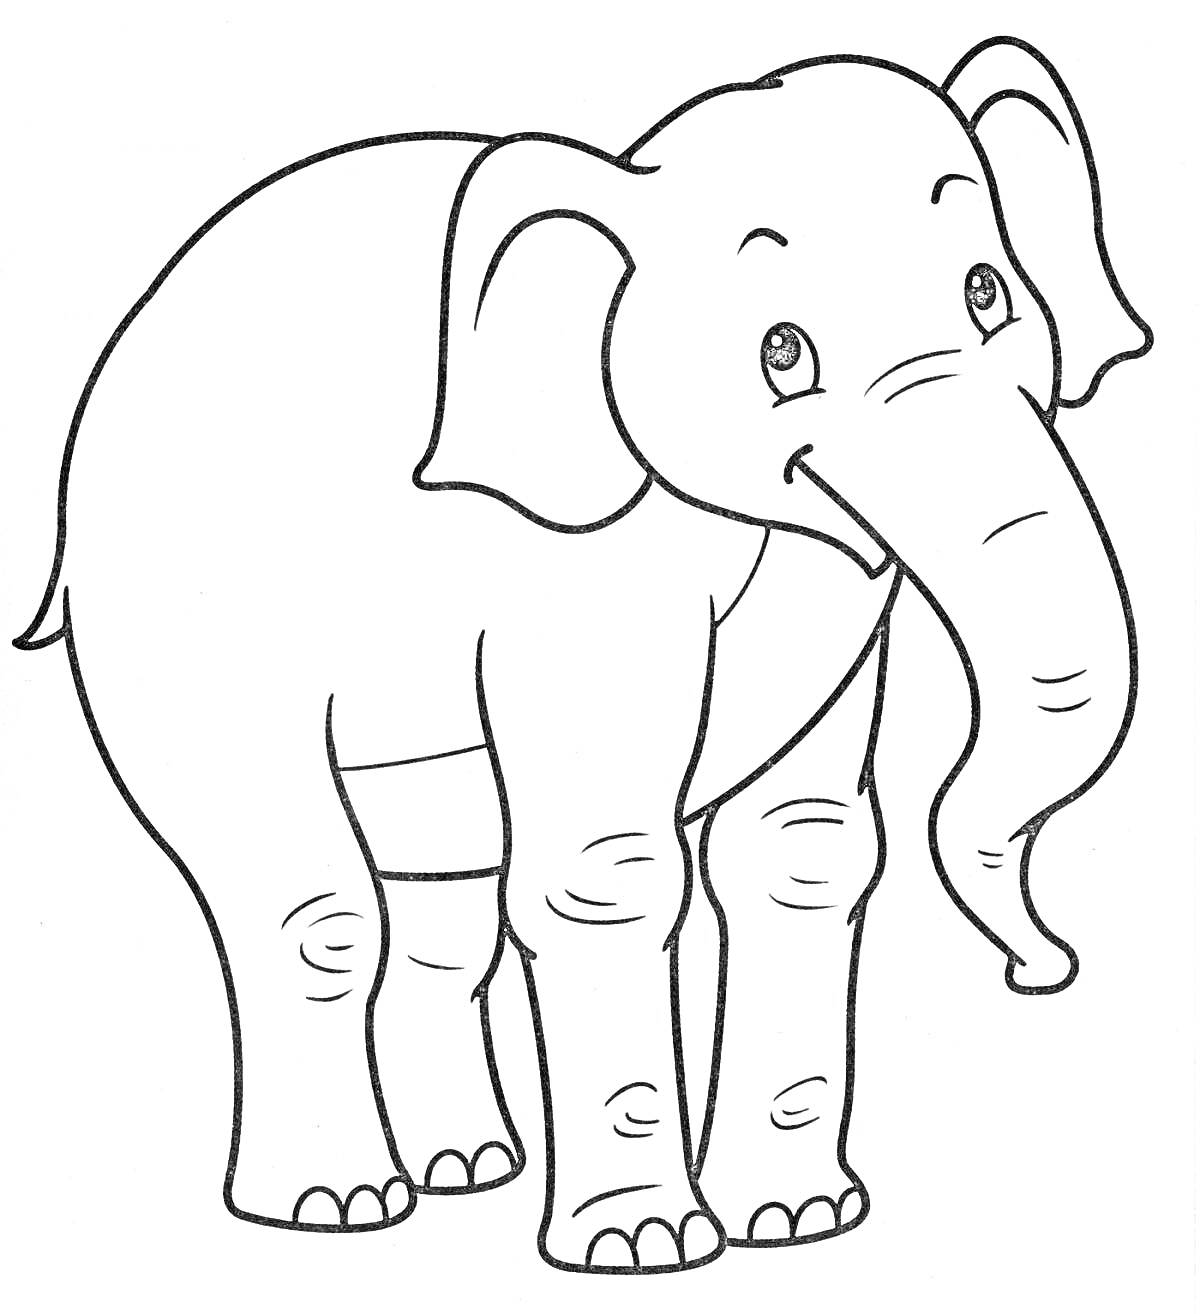 Раскраска Слоник с крупными ушами и длинным хоботом, стоящий на четырех ногах